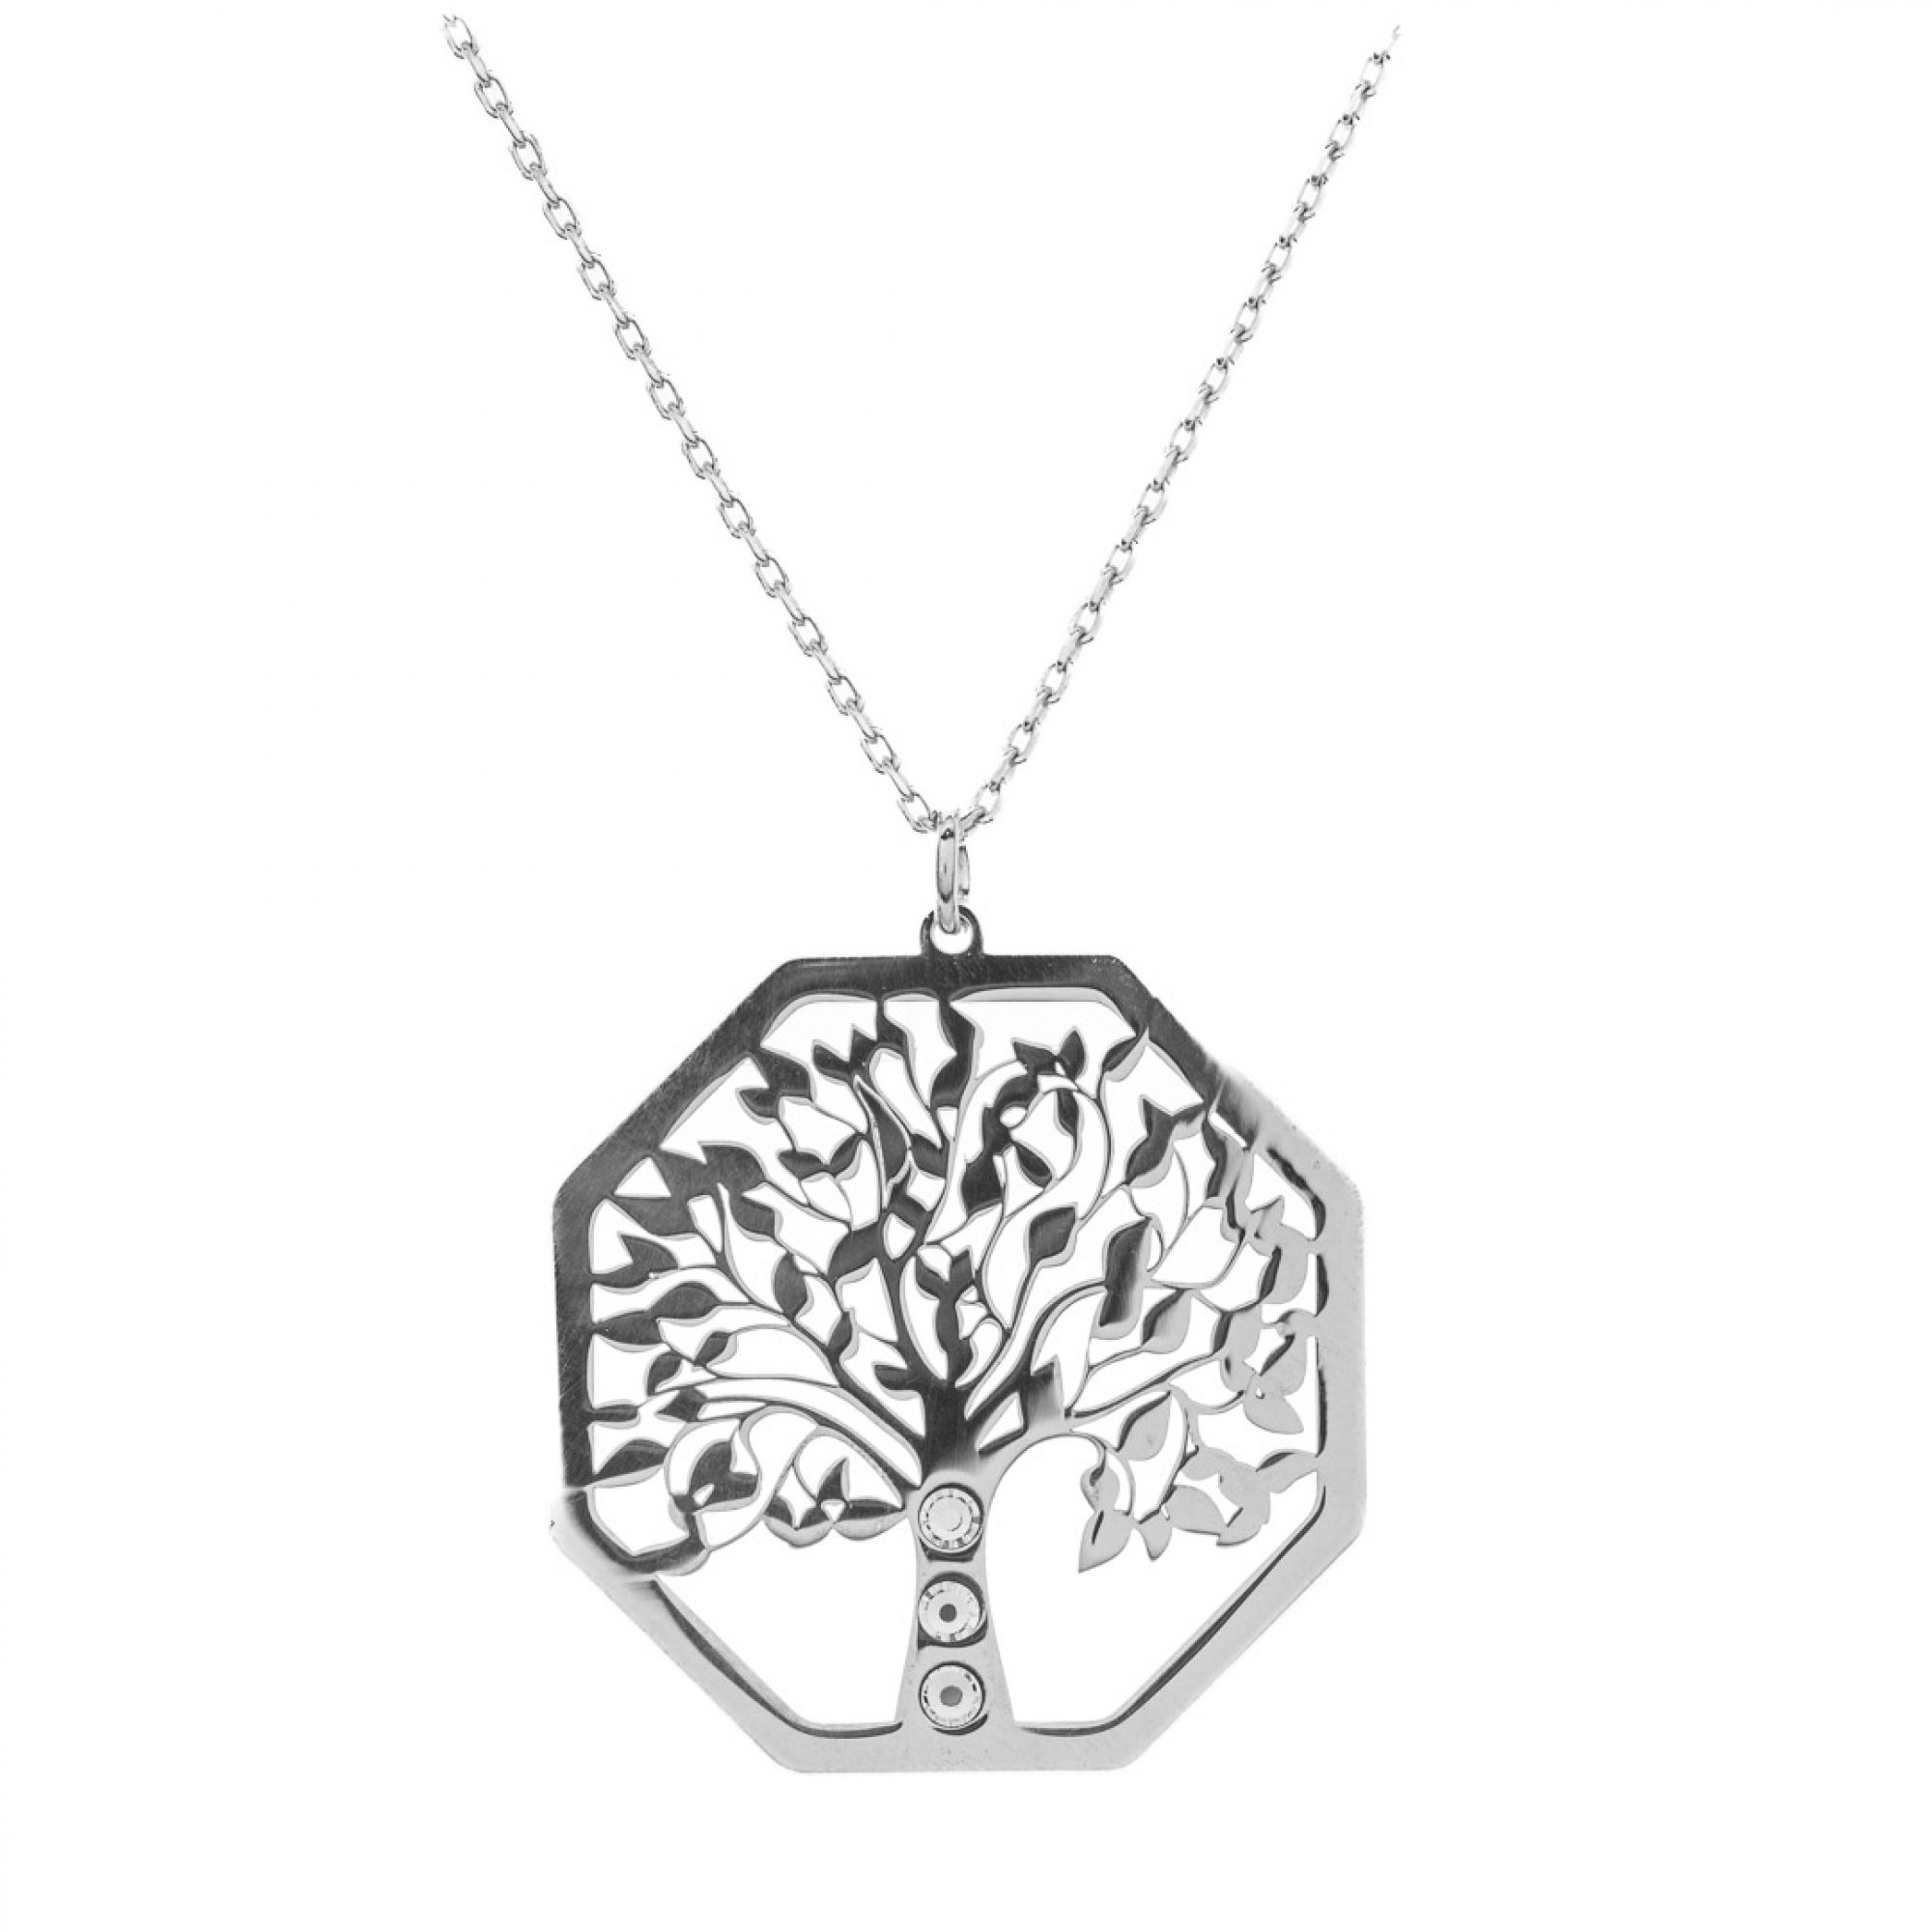 Tree of life necklace with zircon stones